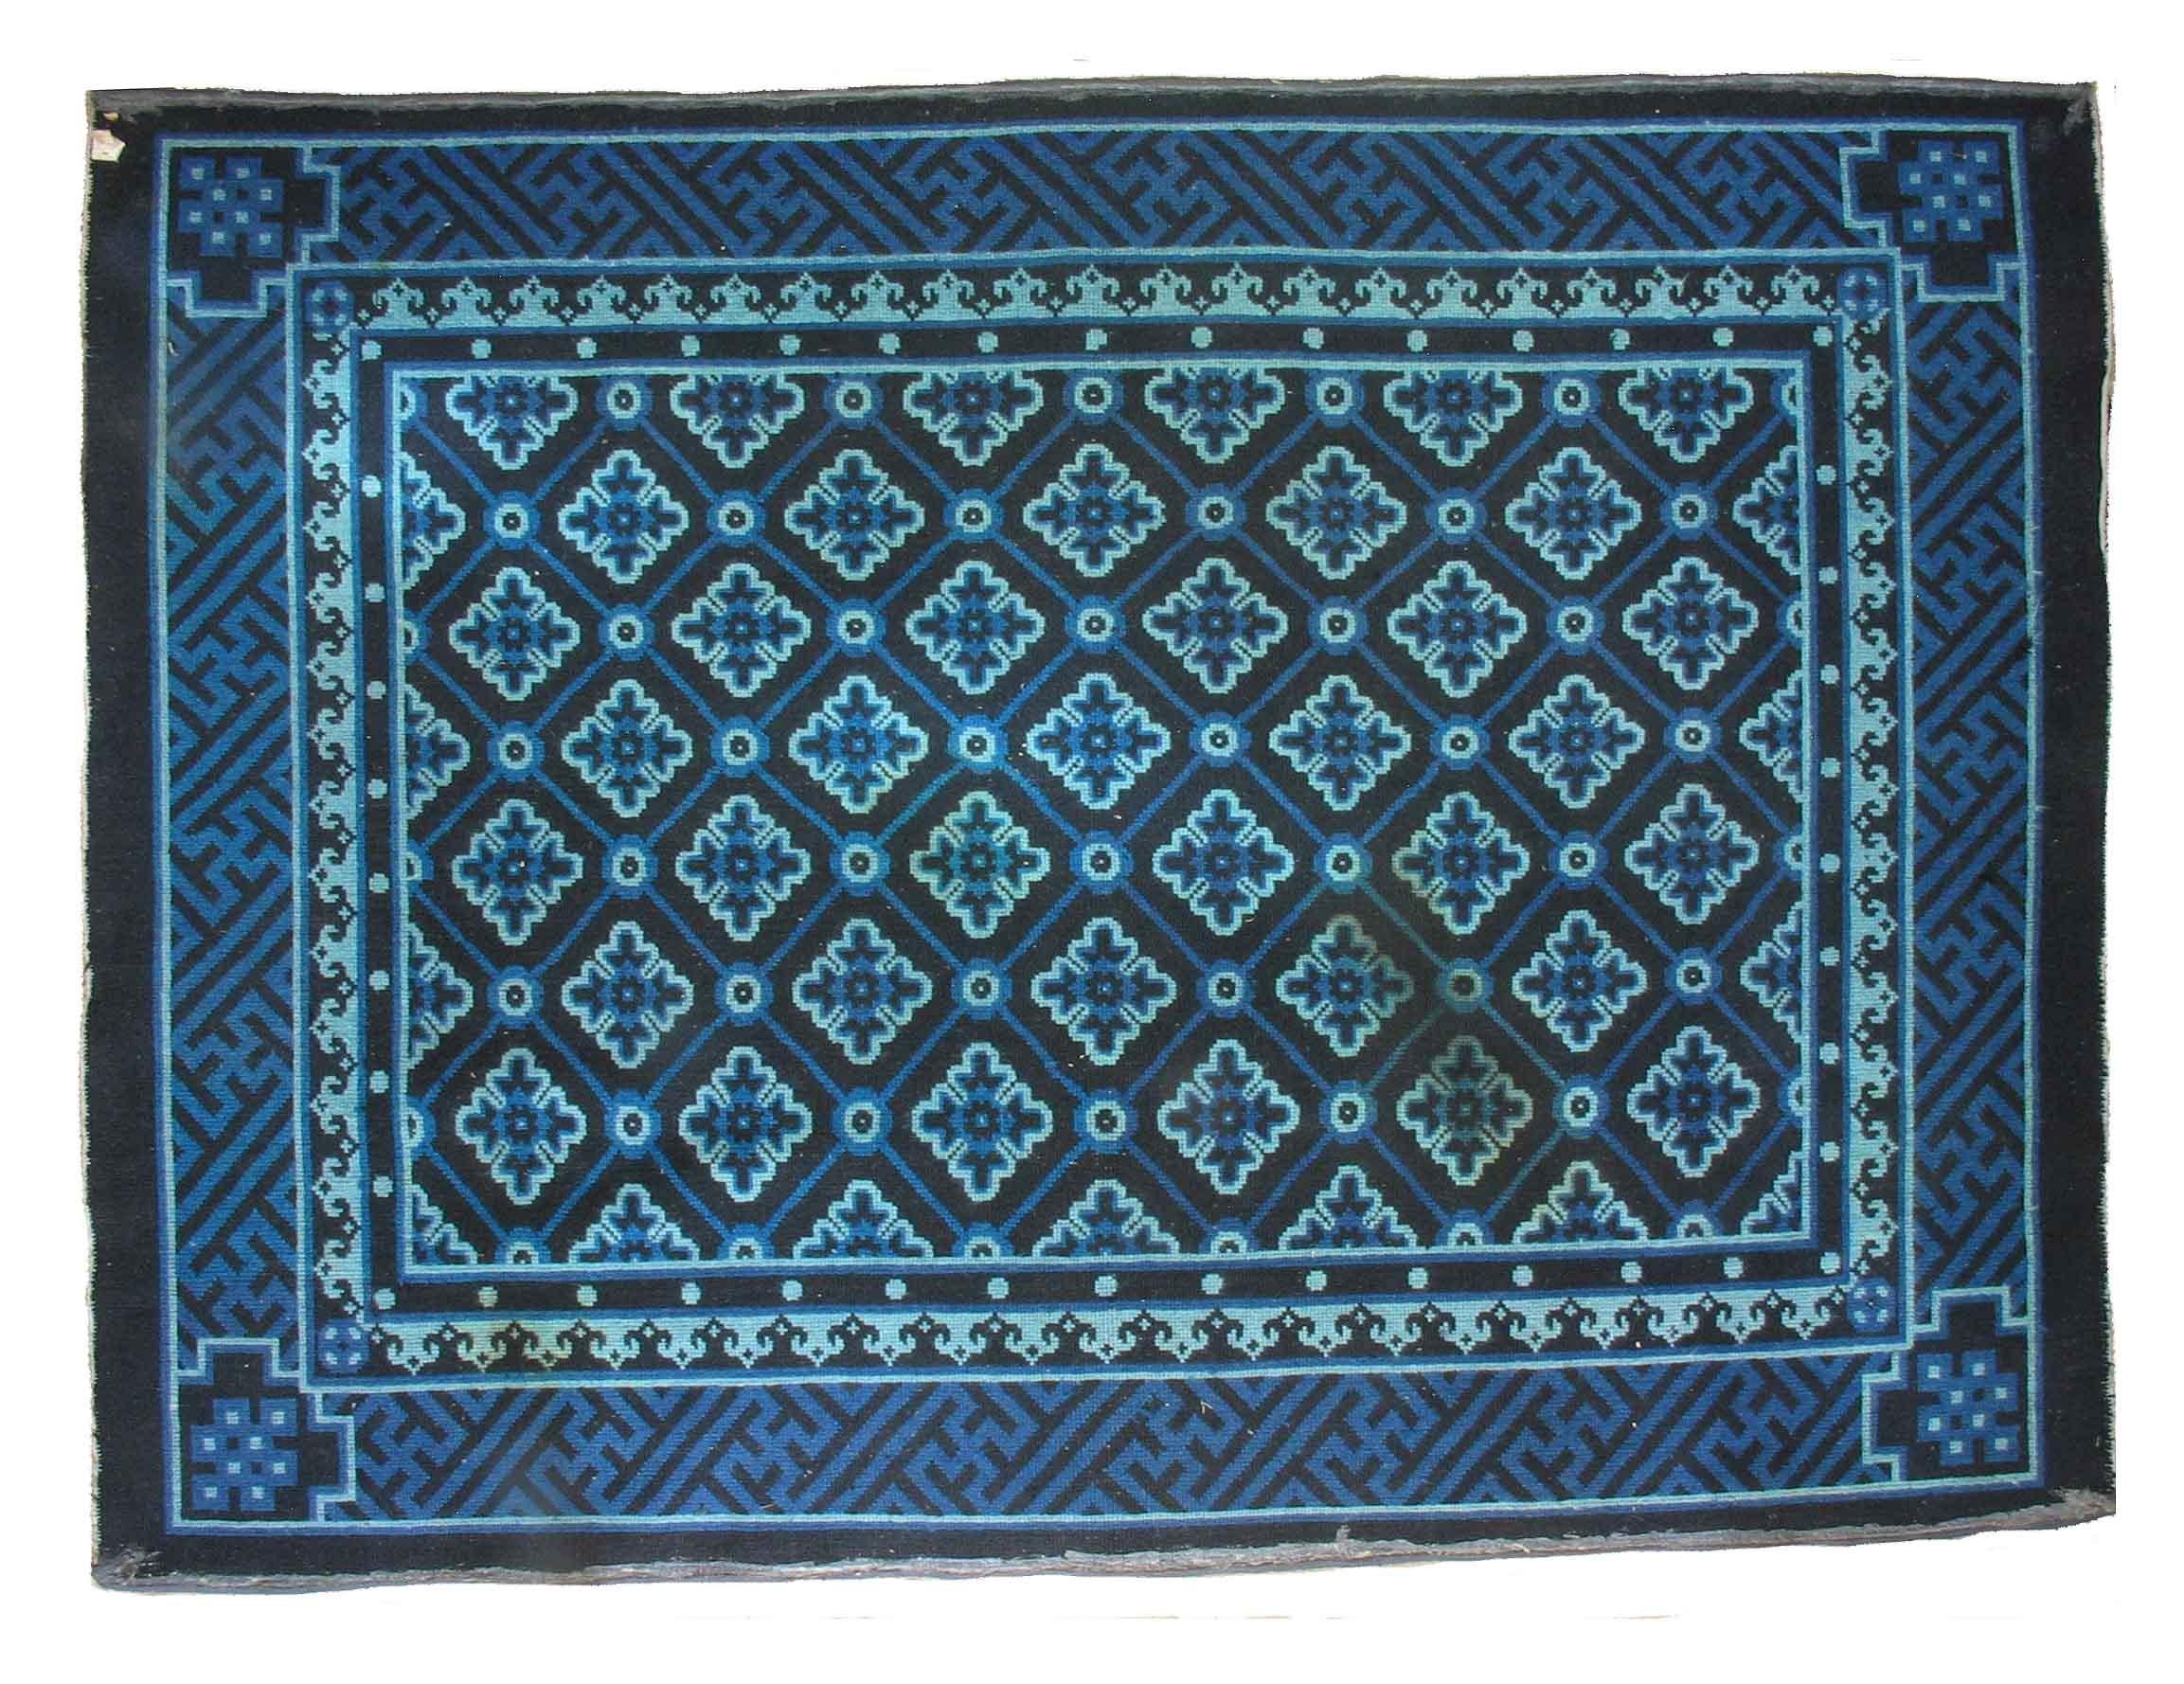 baotou rug